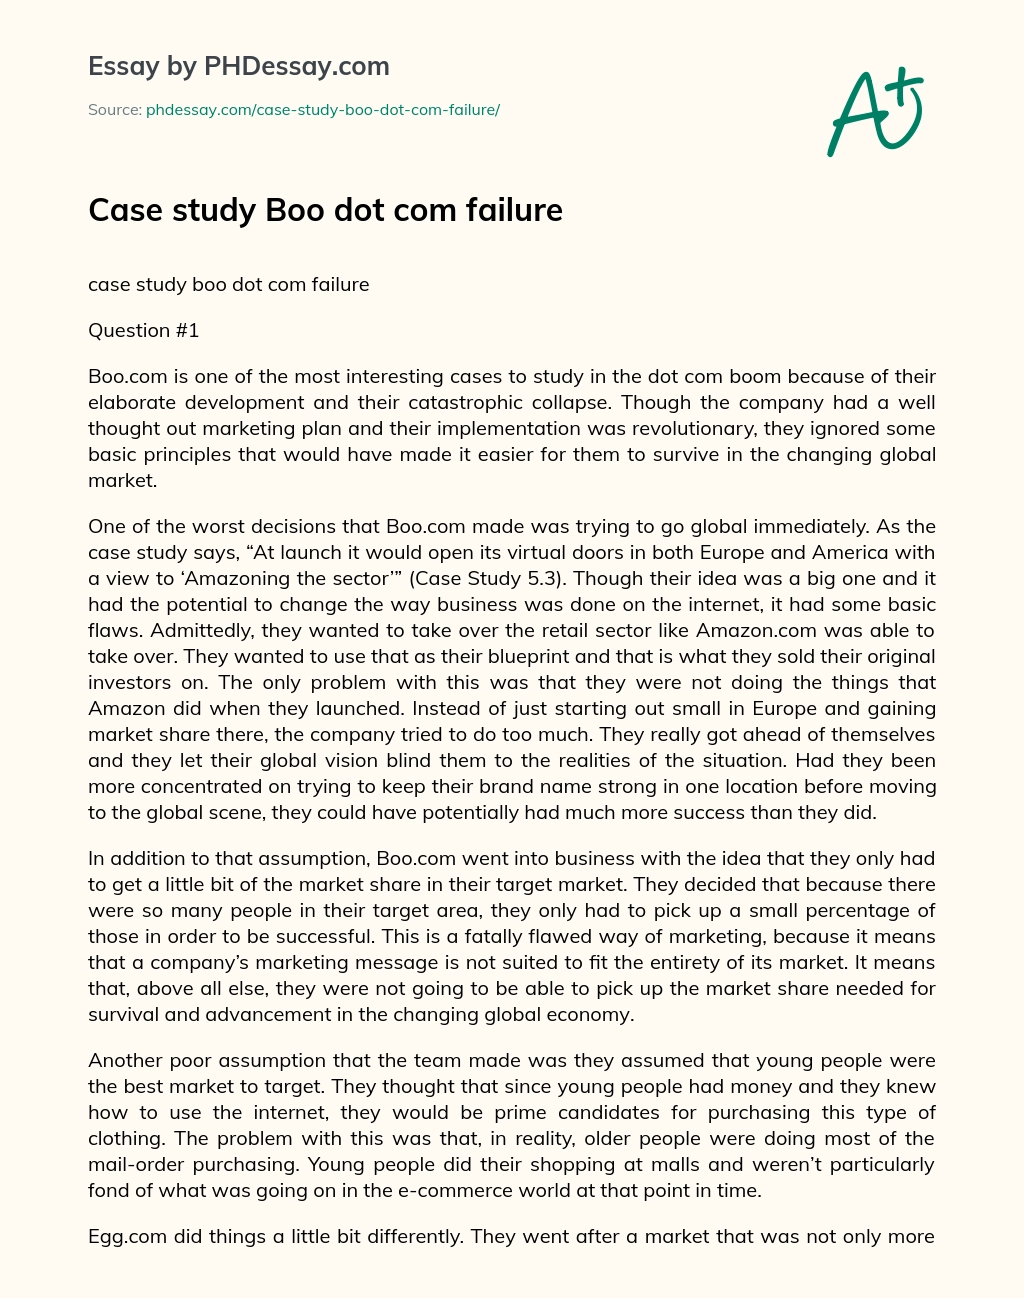 Case study Boo dot com failure essay